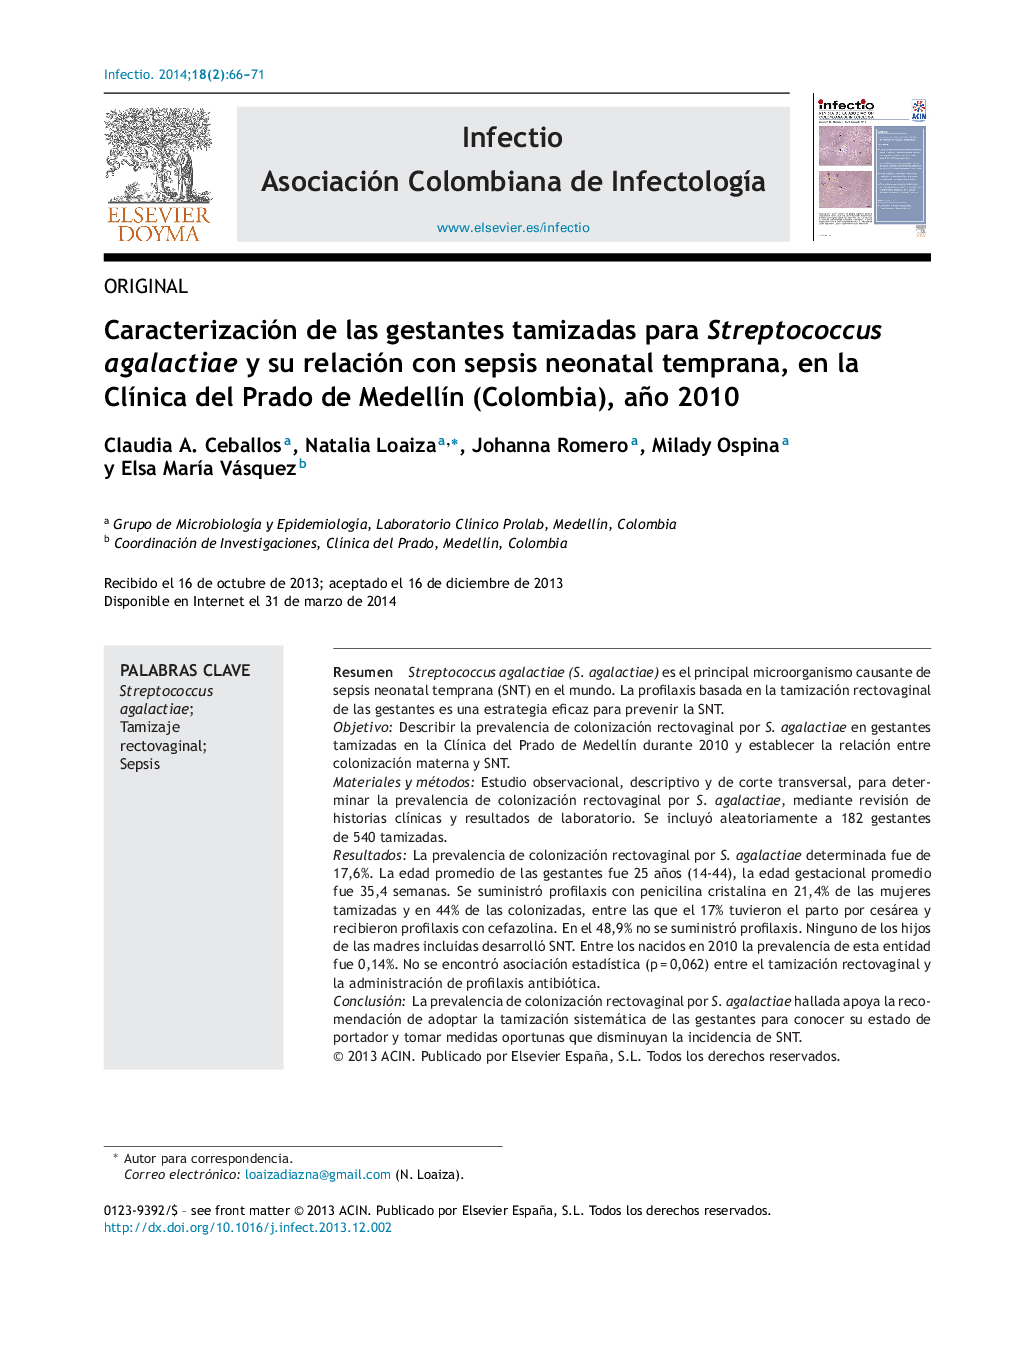 Caracterización de las gestantes tamizadas para Streptococcus agalactiae y su relación con sepsis neonatal temprana, en la Clínica del Prado de Medellín (Colombia), año 2010